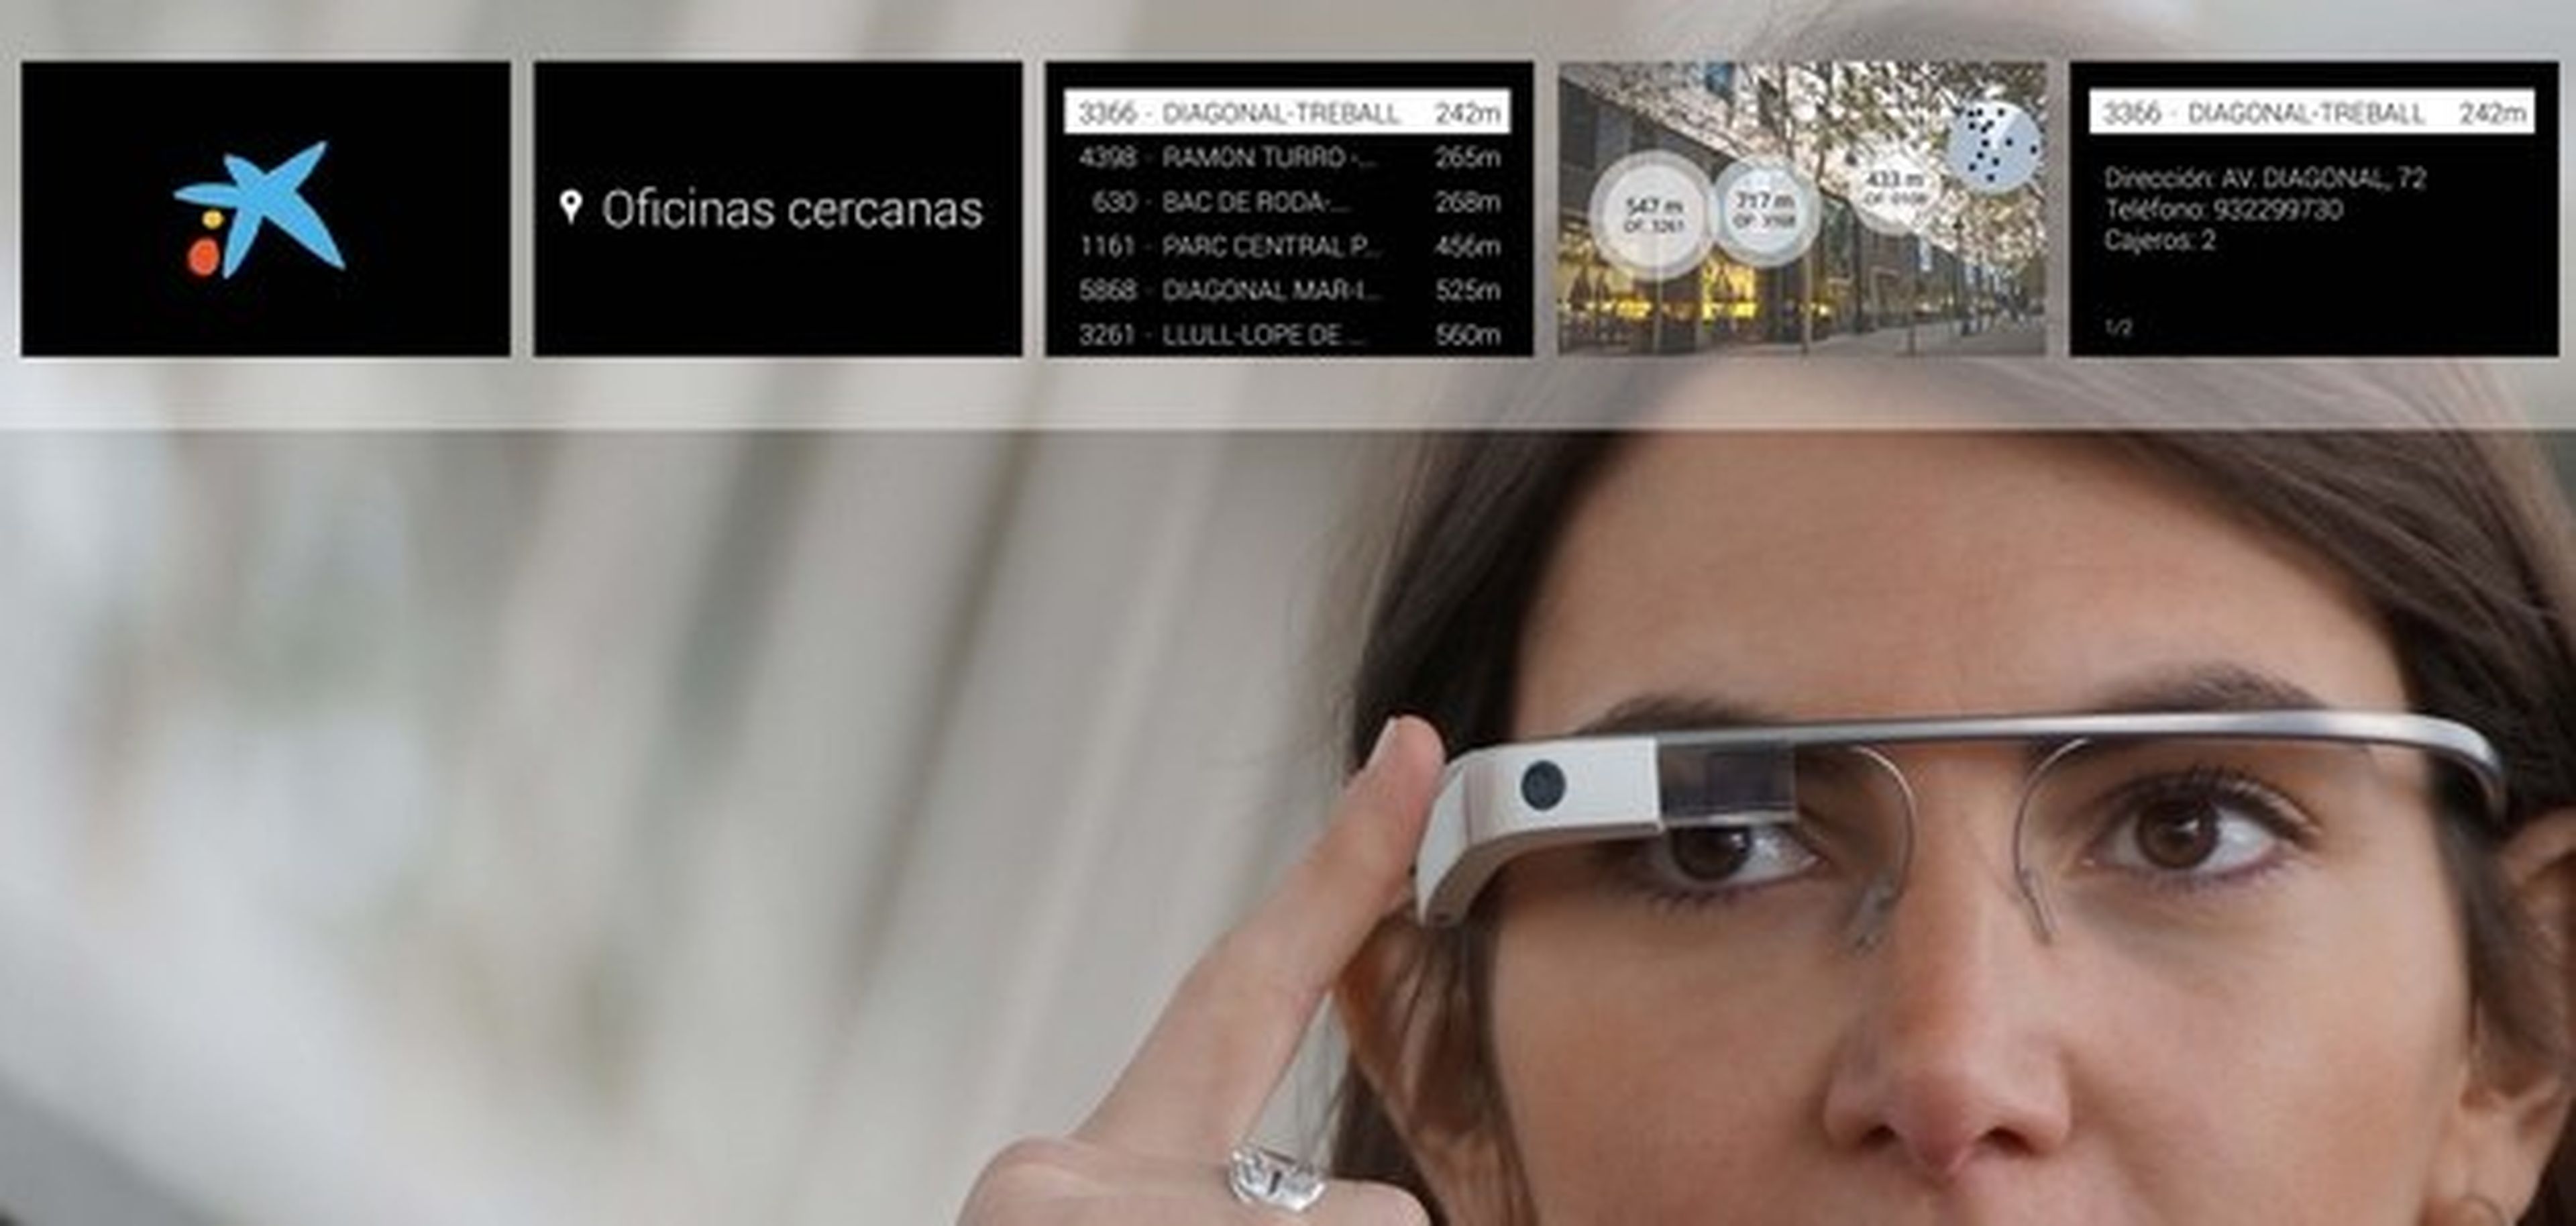 App de La Caixa para Google Glass